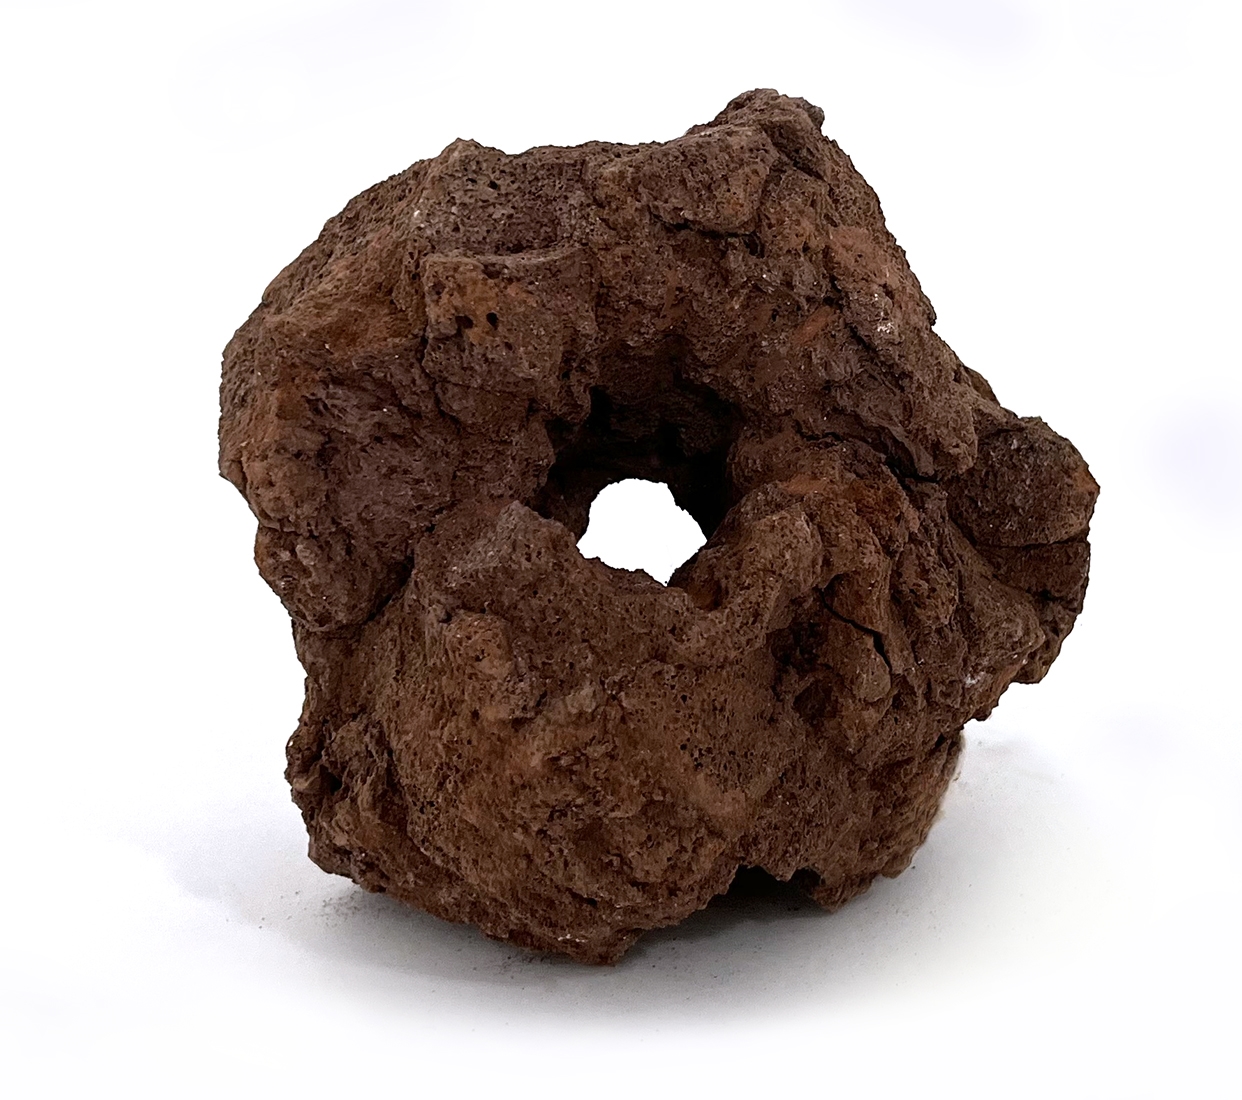 MACENAUER Láva-multi hole, děrovaná, 1 ks, 15-20 cm, 0,4-0,7 kg